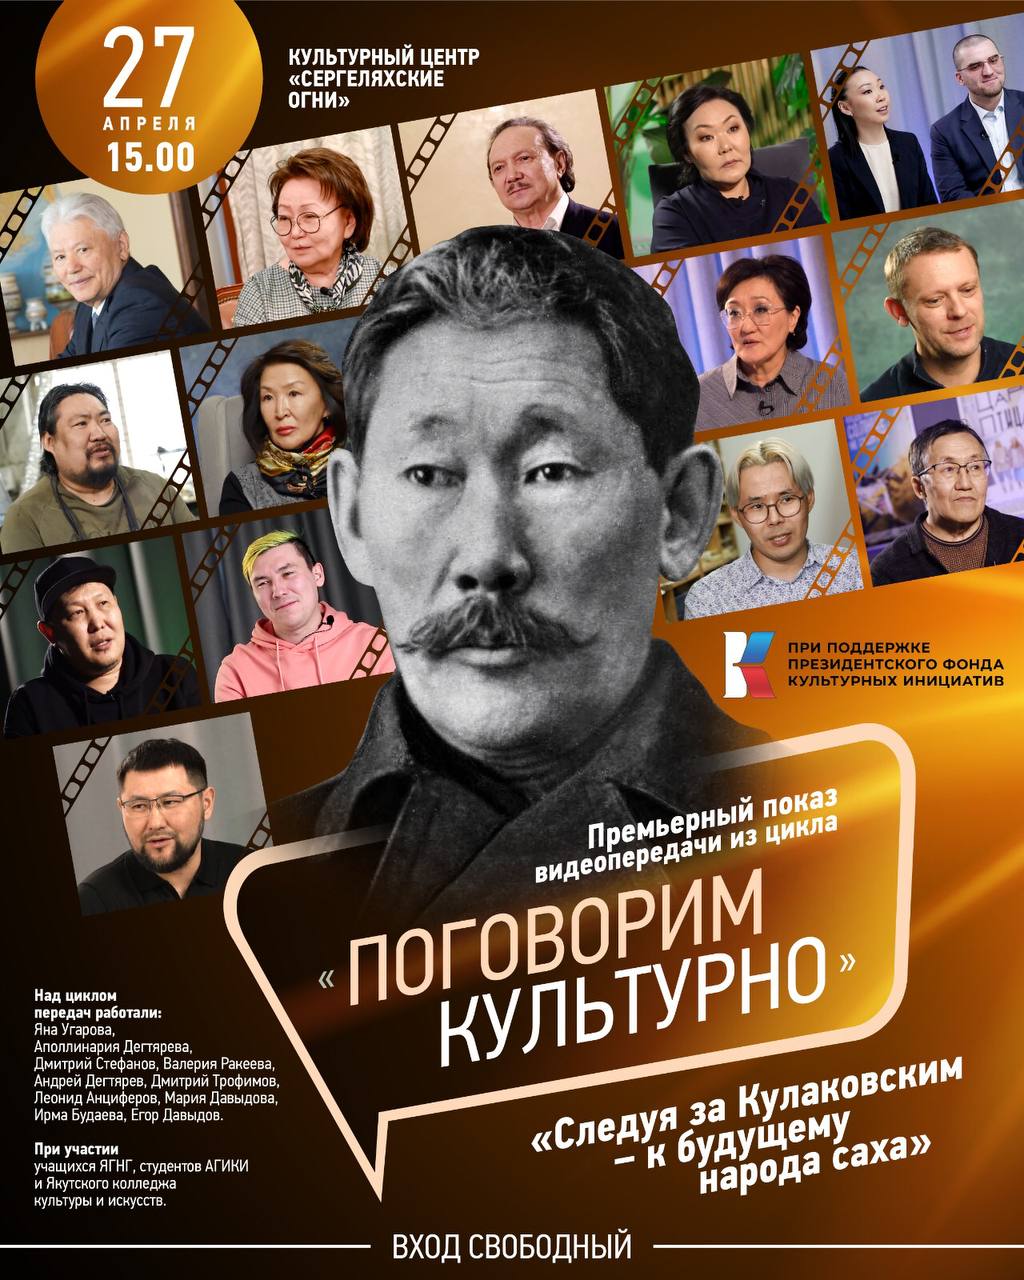 Премьеру проекта «Поговорим культурно» покажут на телеканале НВК Саха в Якутии